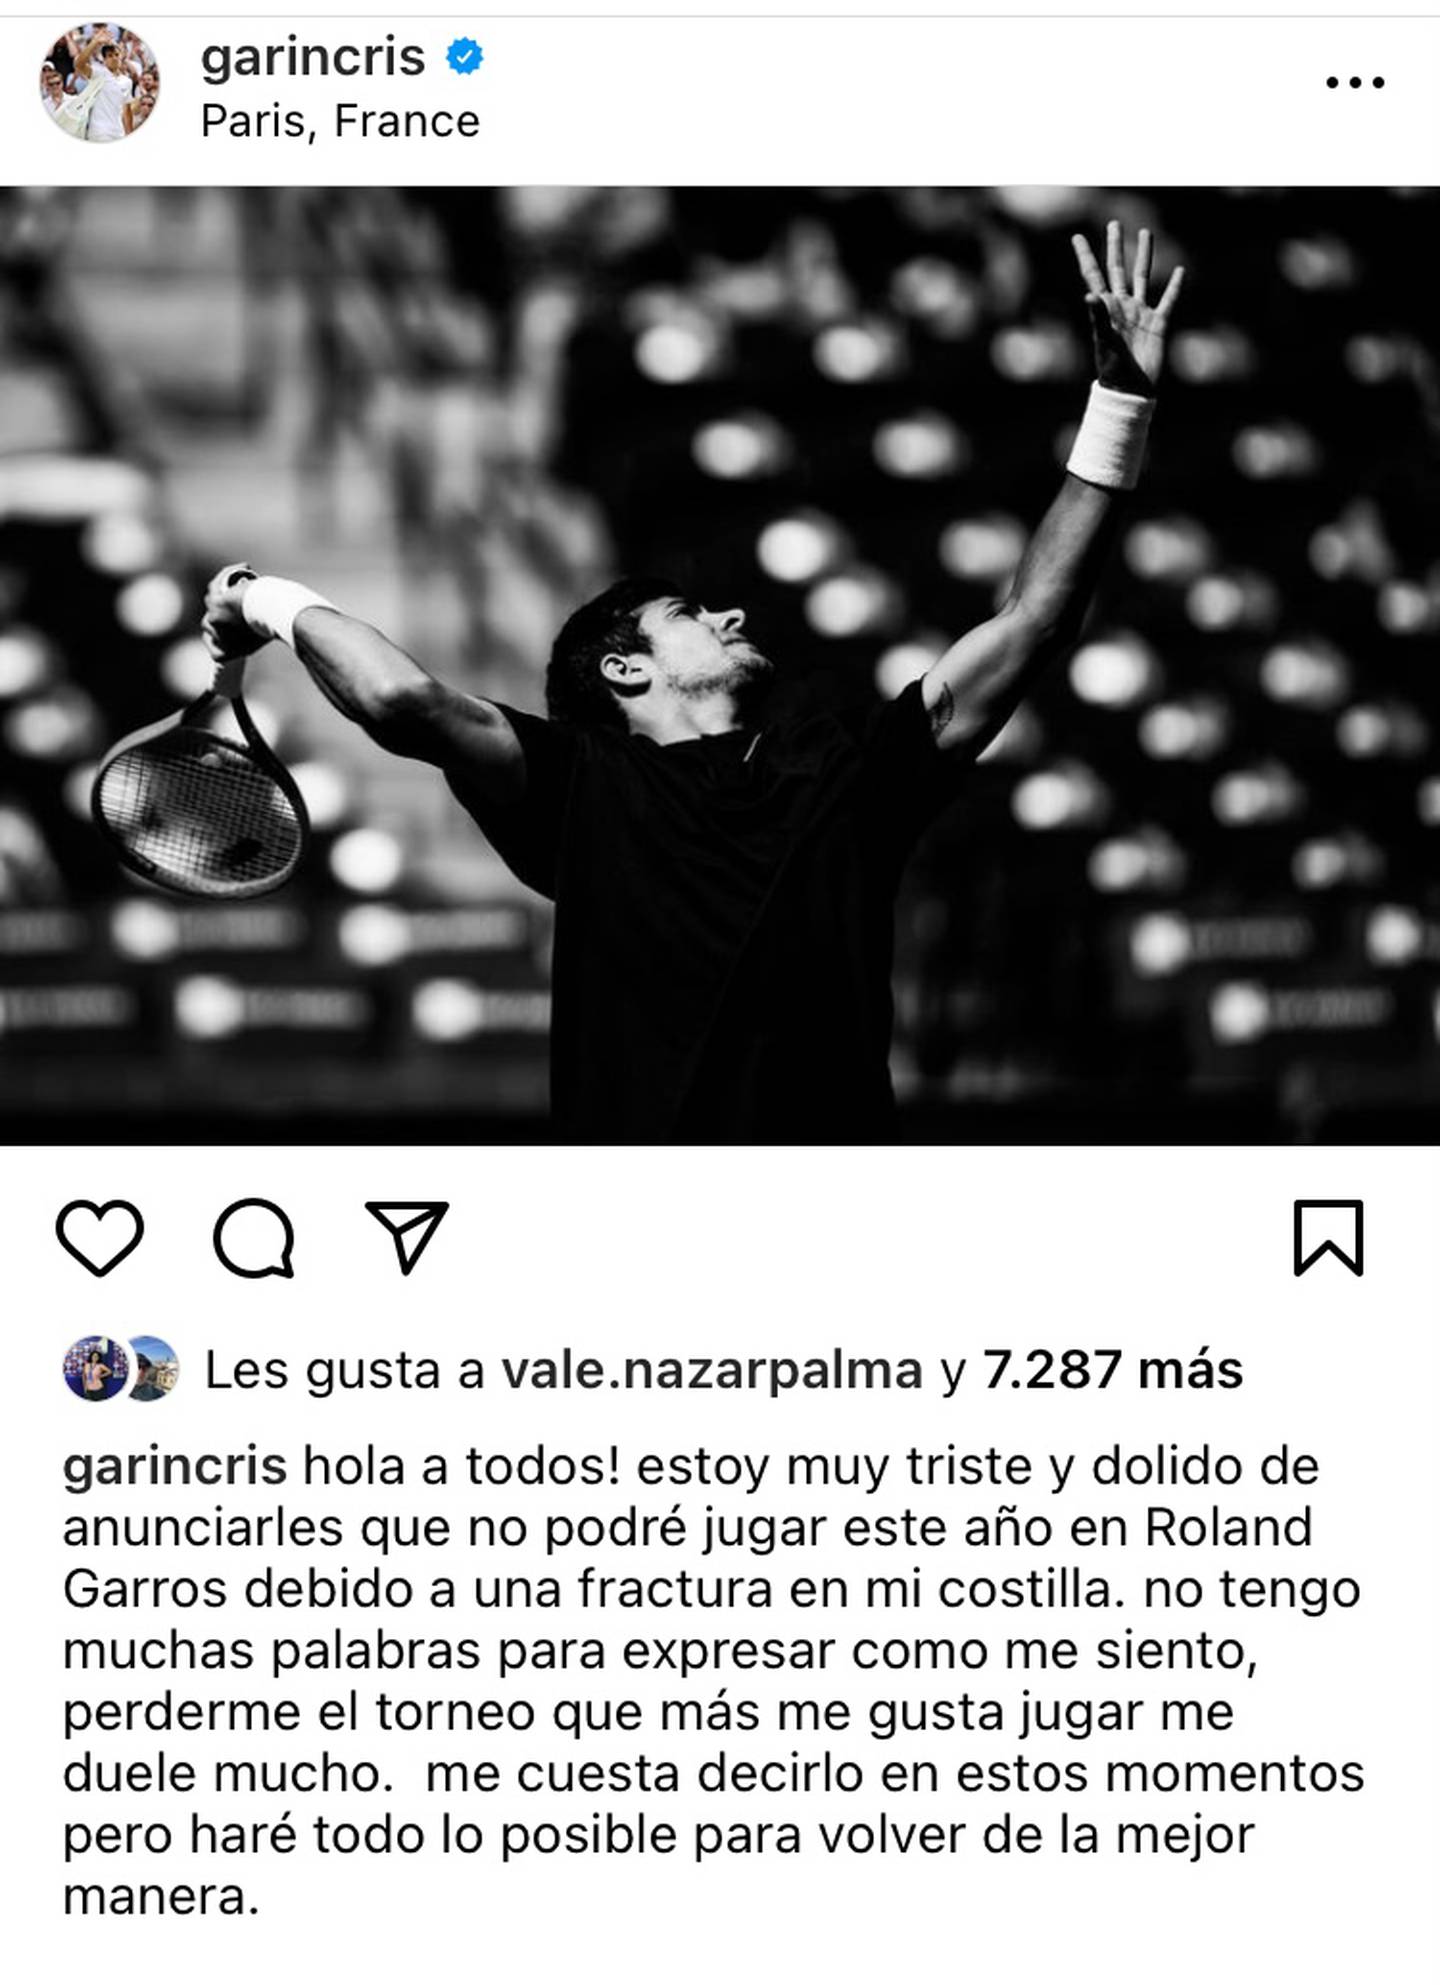 Publicación de Instagram de Cristian Garin en que confirma que no jugará en Roland Garros.